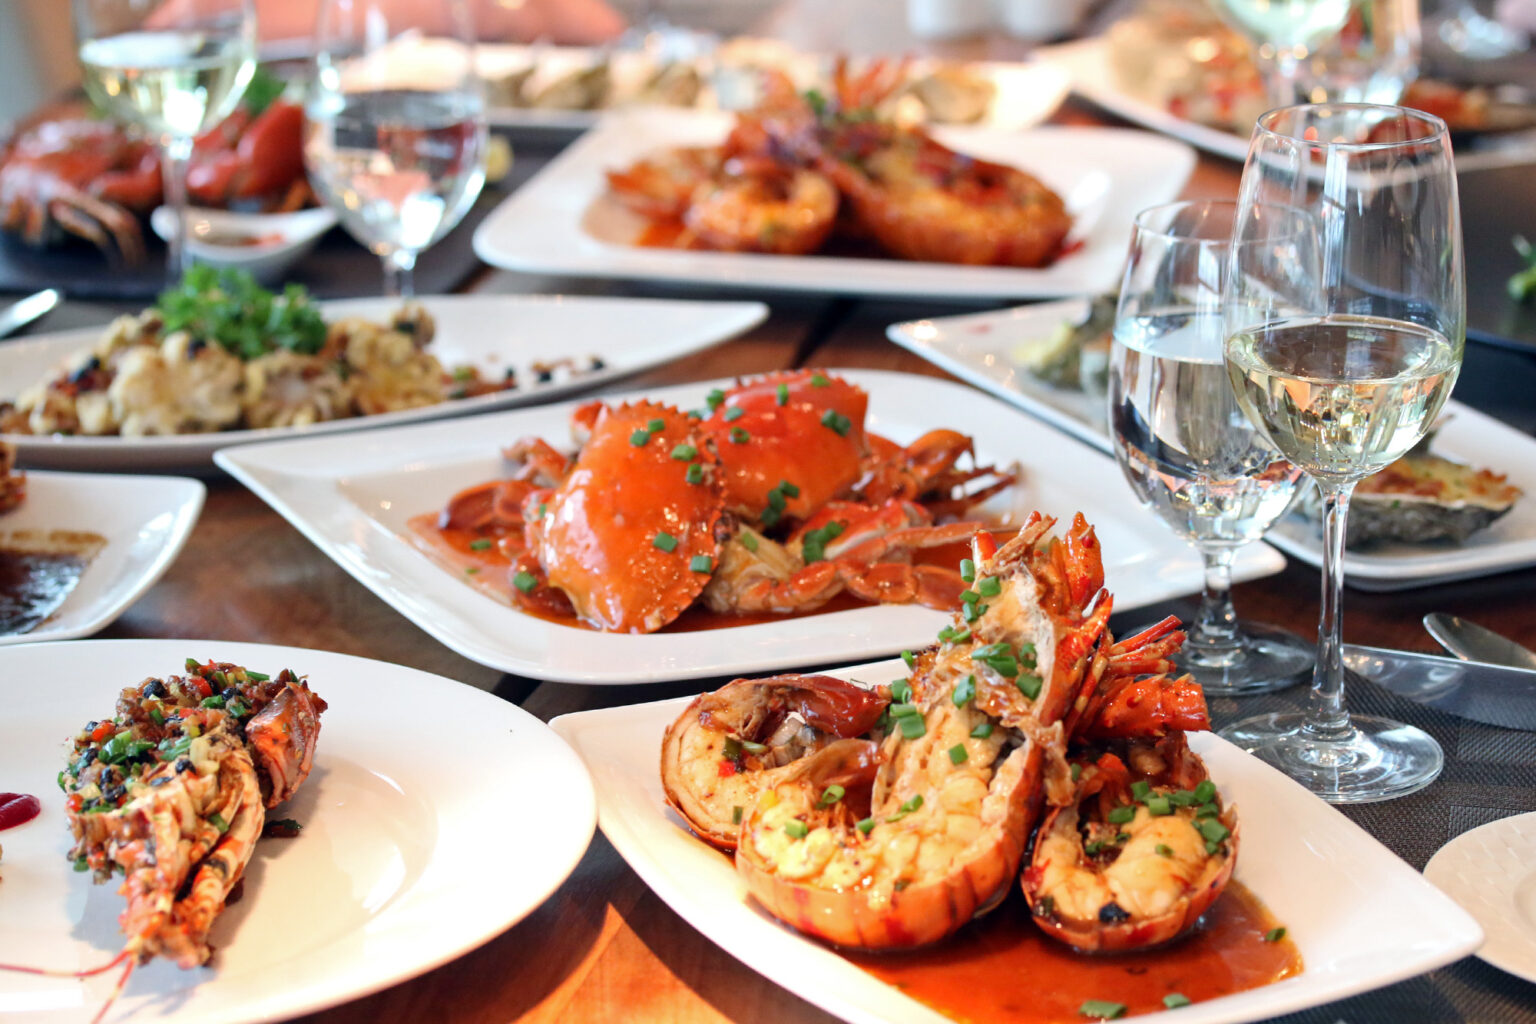 La Brasserie Restaurant - Nhà hàng chuyên phục vụ các món hải sản tươi sống